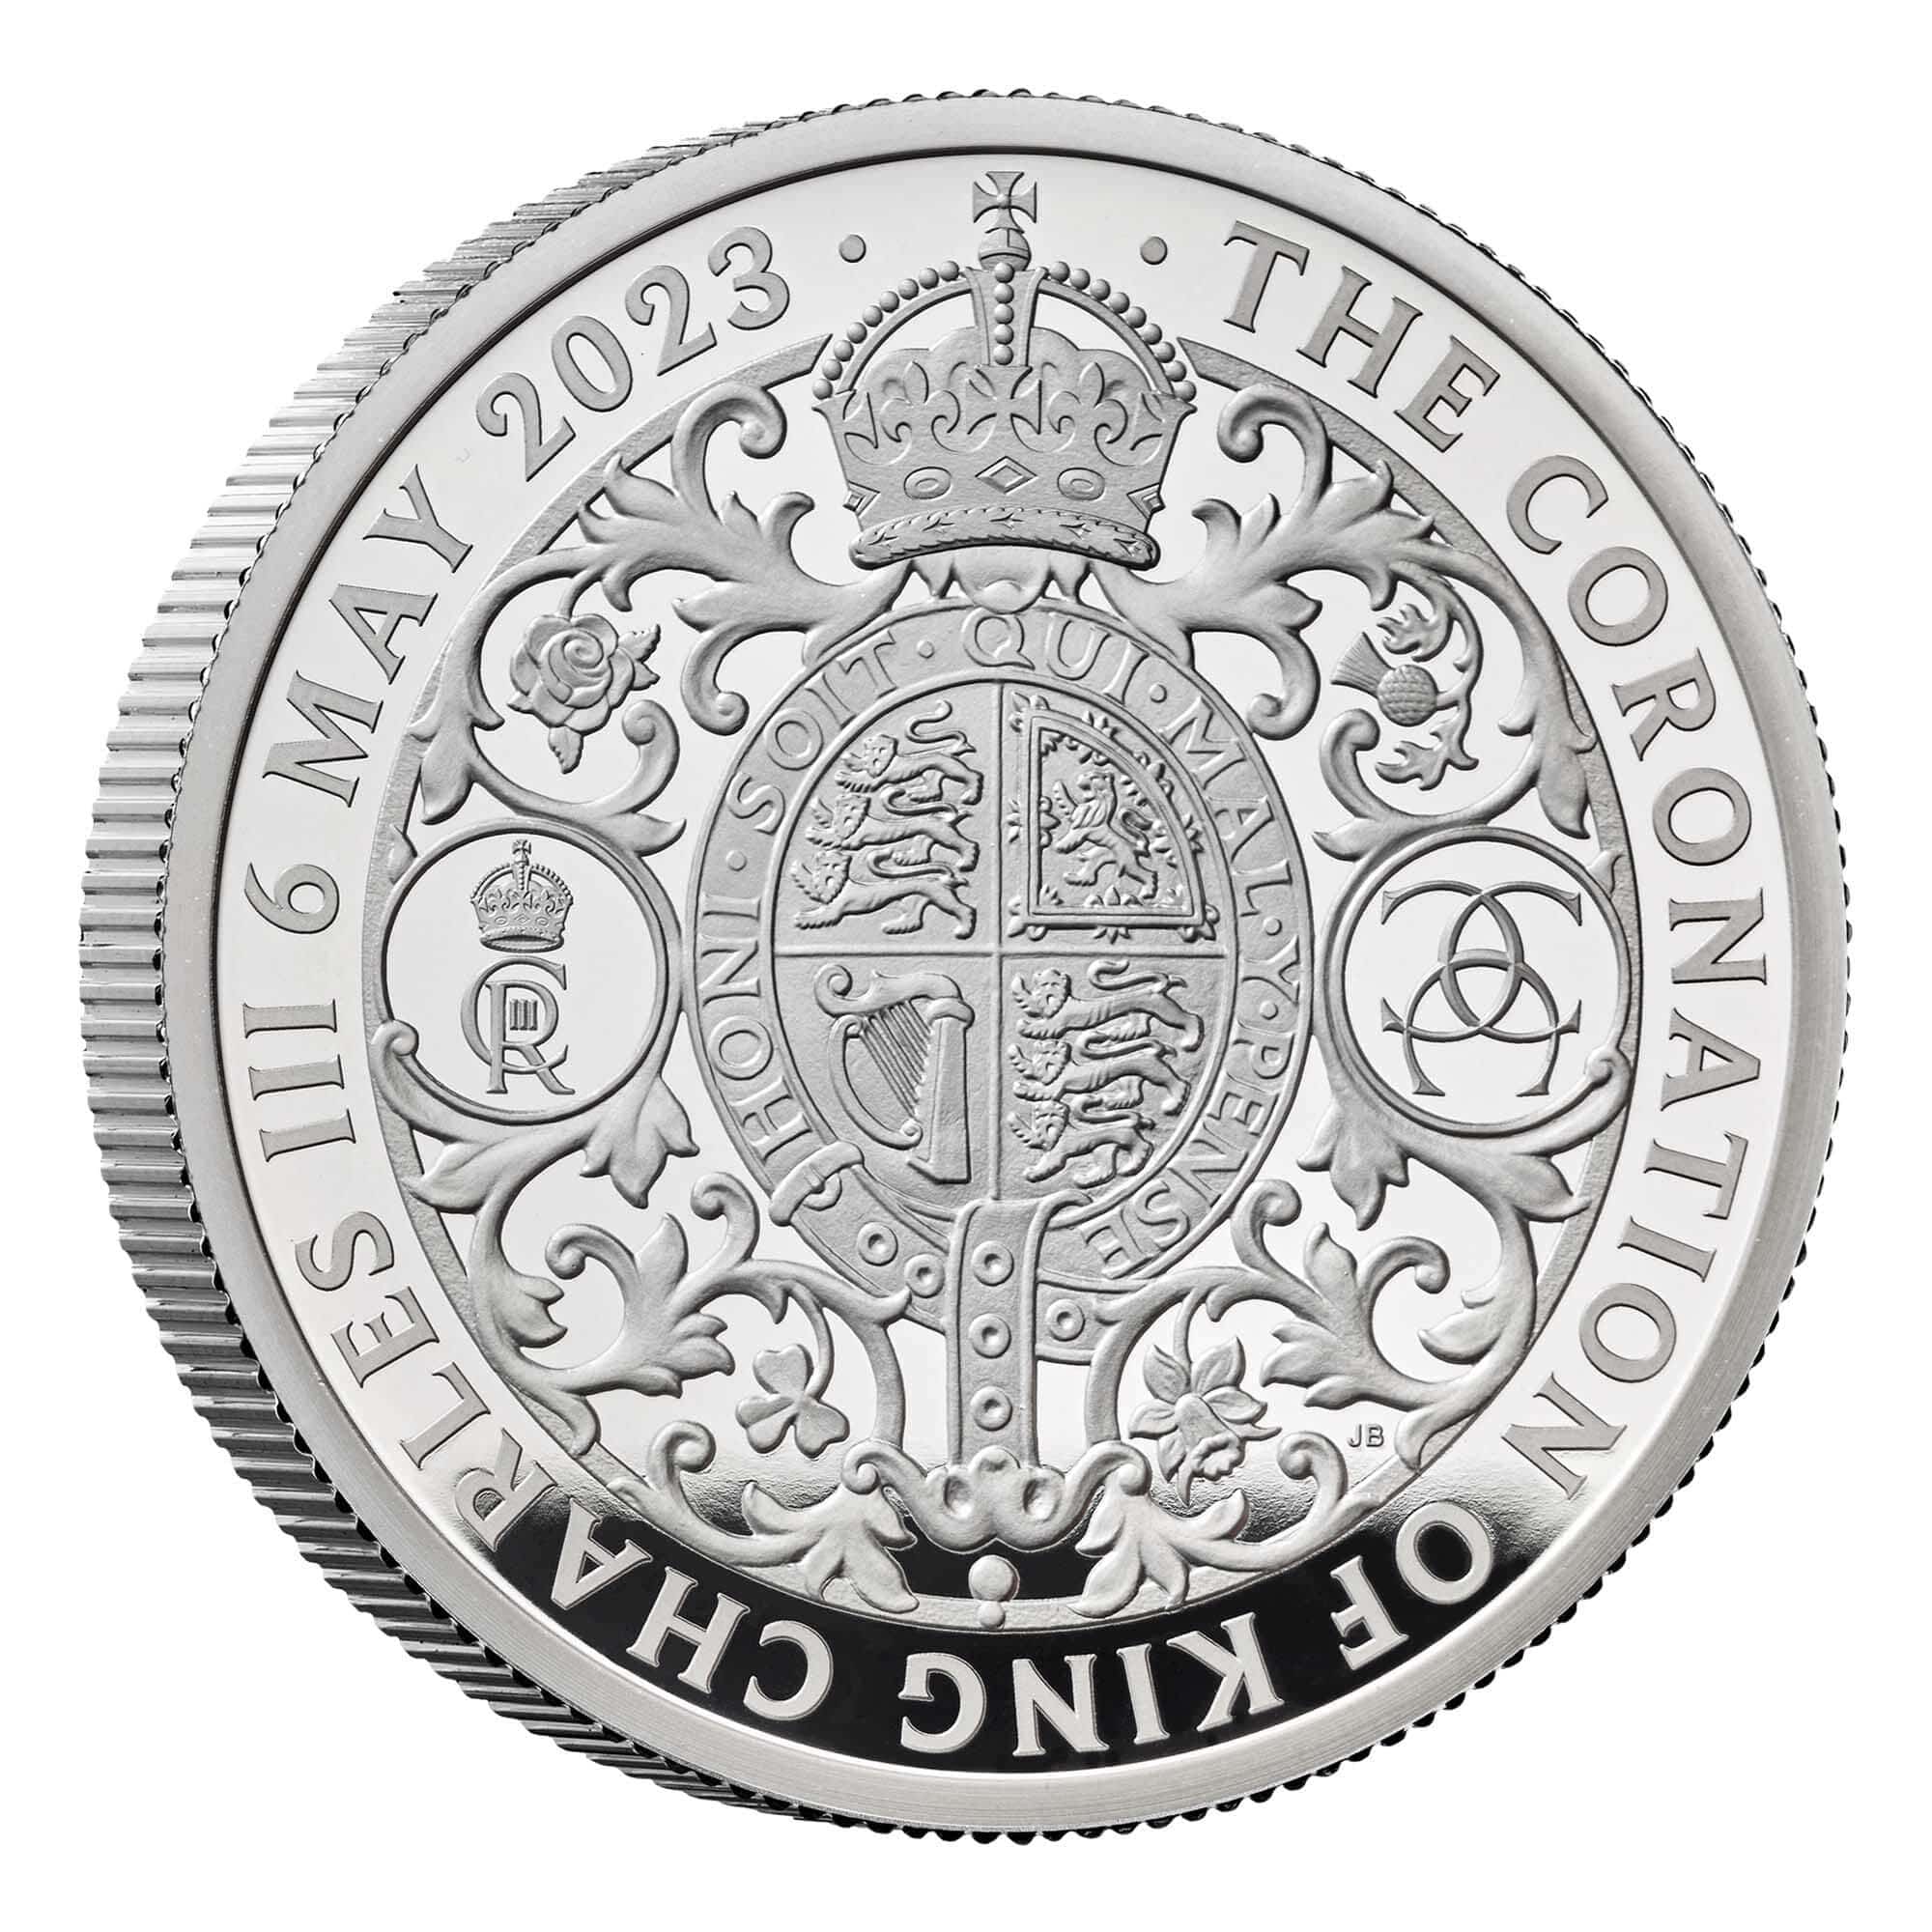 2023 チャールズ3世 戴冠式記念コイン 5£プルーフ銀貨【限定12,500枚